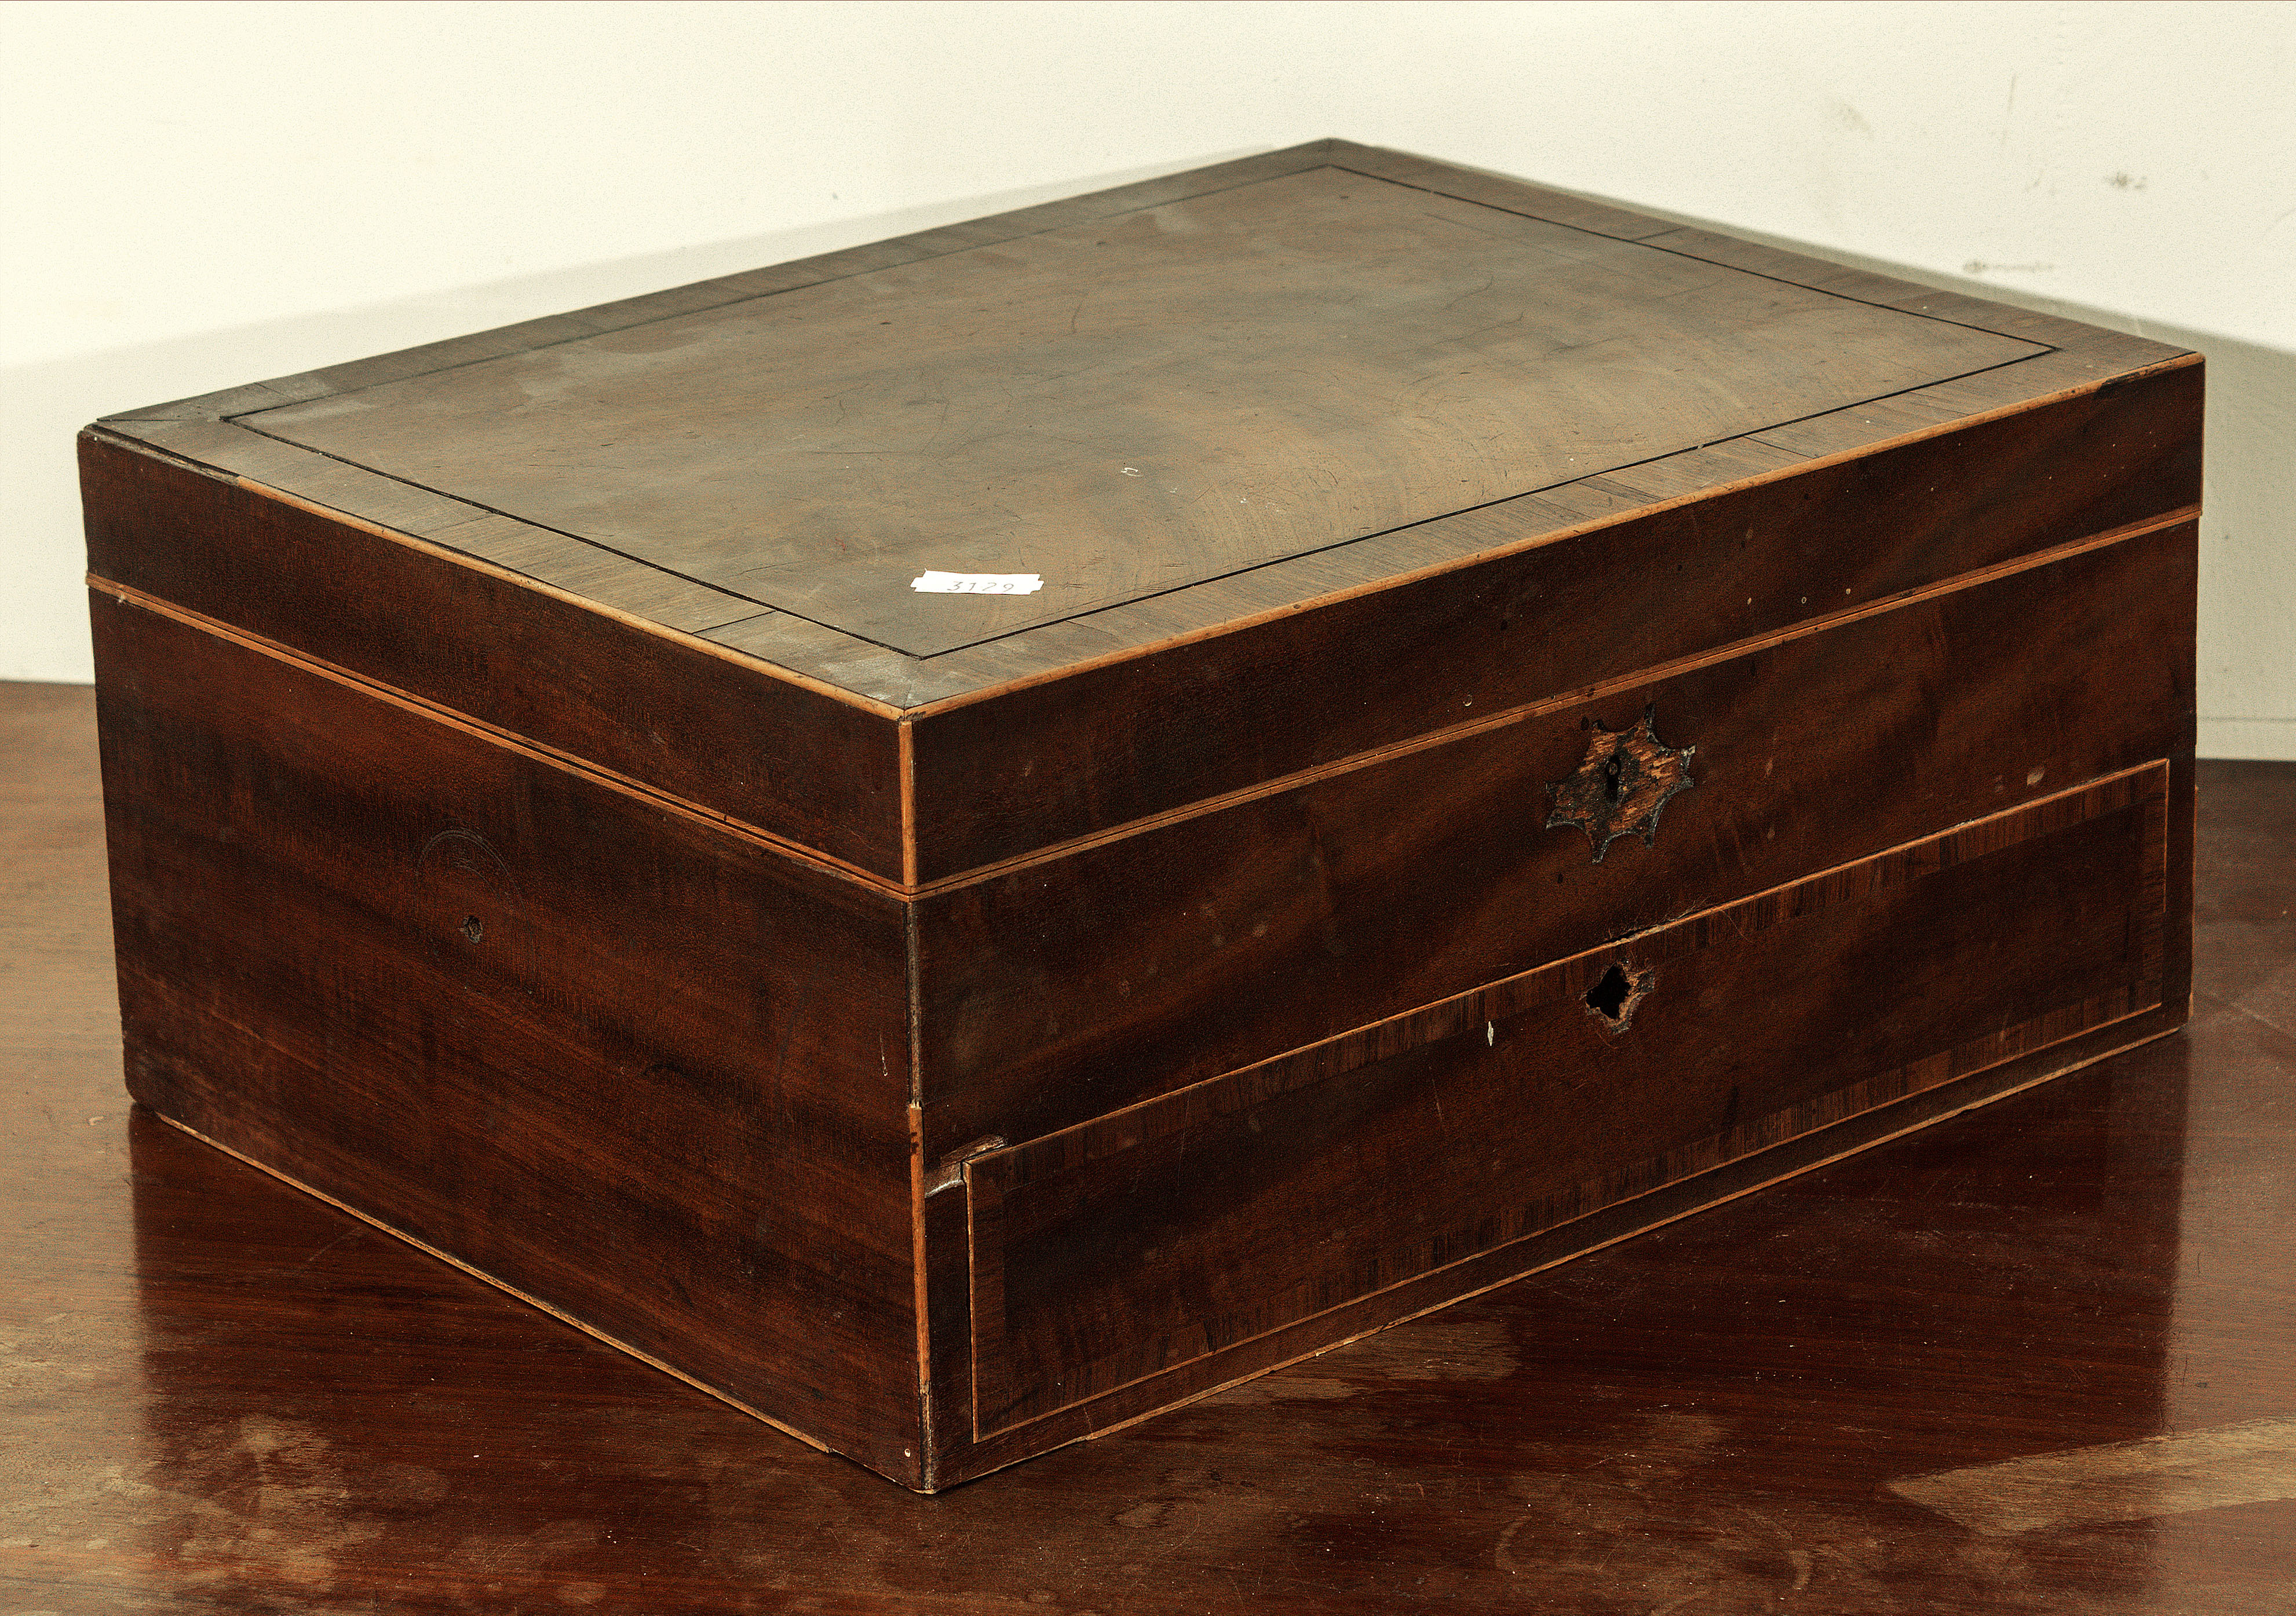 A mahogany sewing box. Distressed.